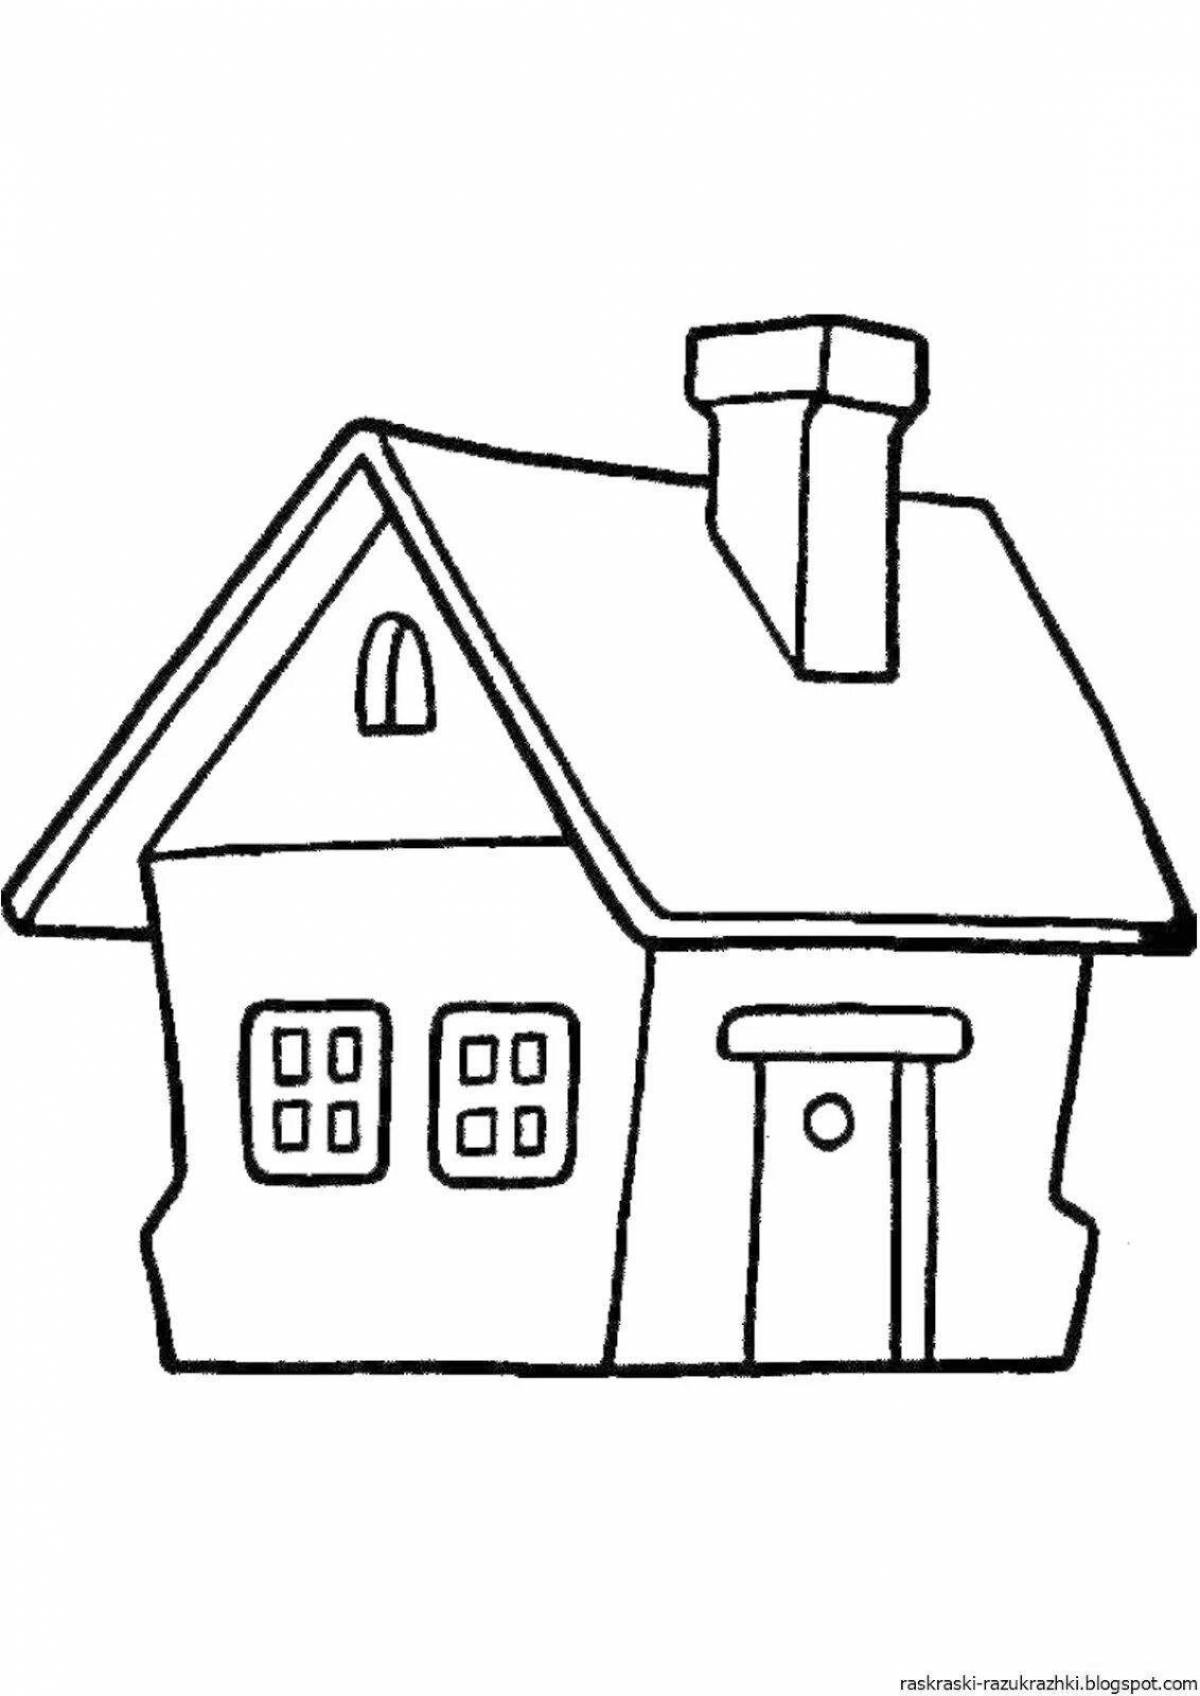 Children's fun house drawing sheet